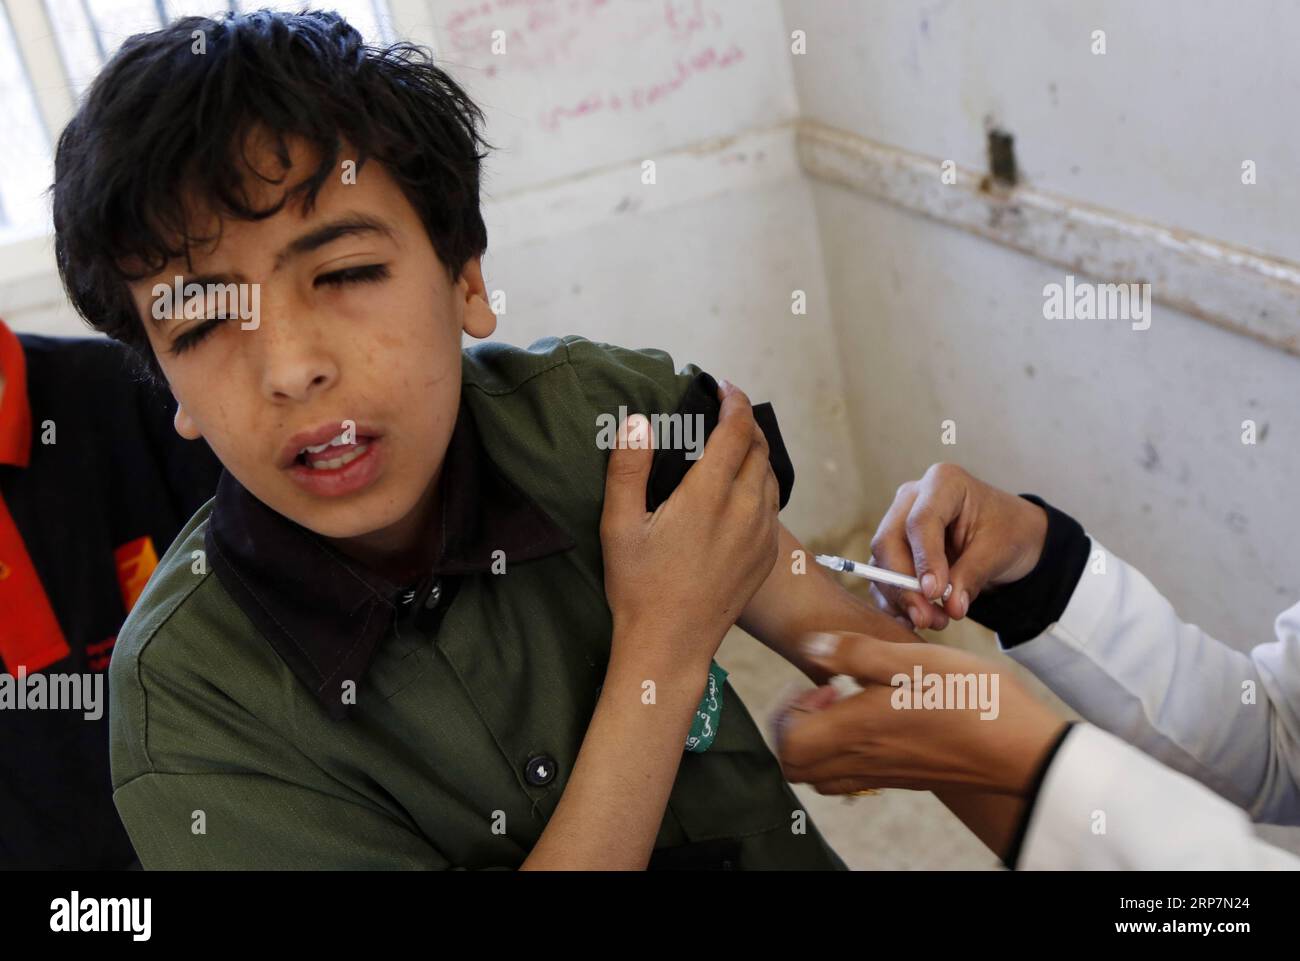 (190209) -- SANAA, 9 febbraio 2019 -- Uno studente yemenita riceve un vaccino anti-morbillo e rosolia in una scuola di Sanaa, Yemen, 9 febbraio 2019. Sabato scorso in Yemen è iniziata una campagna nazionale di immunizzazione contro i morbilli e la rosolia, che durerà sei giorni. La campagna si rivolge ai bambini yemeniti dai sei mesi ai 15 anni, secondo i media locali. Mohammed) YEMEN-SANAA-MORBILLO-ROSOLIA-VACCINAZIONE nieyunpeng PUBLICATIONxNOTxINxCHN Foto Stock